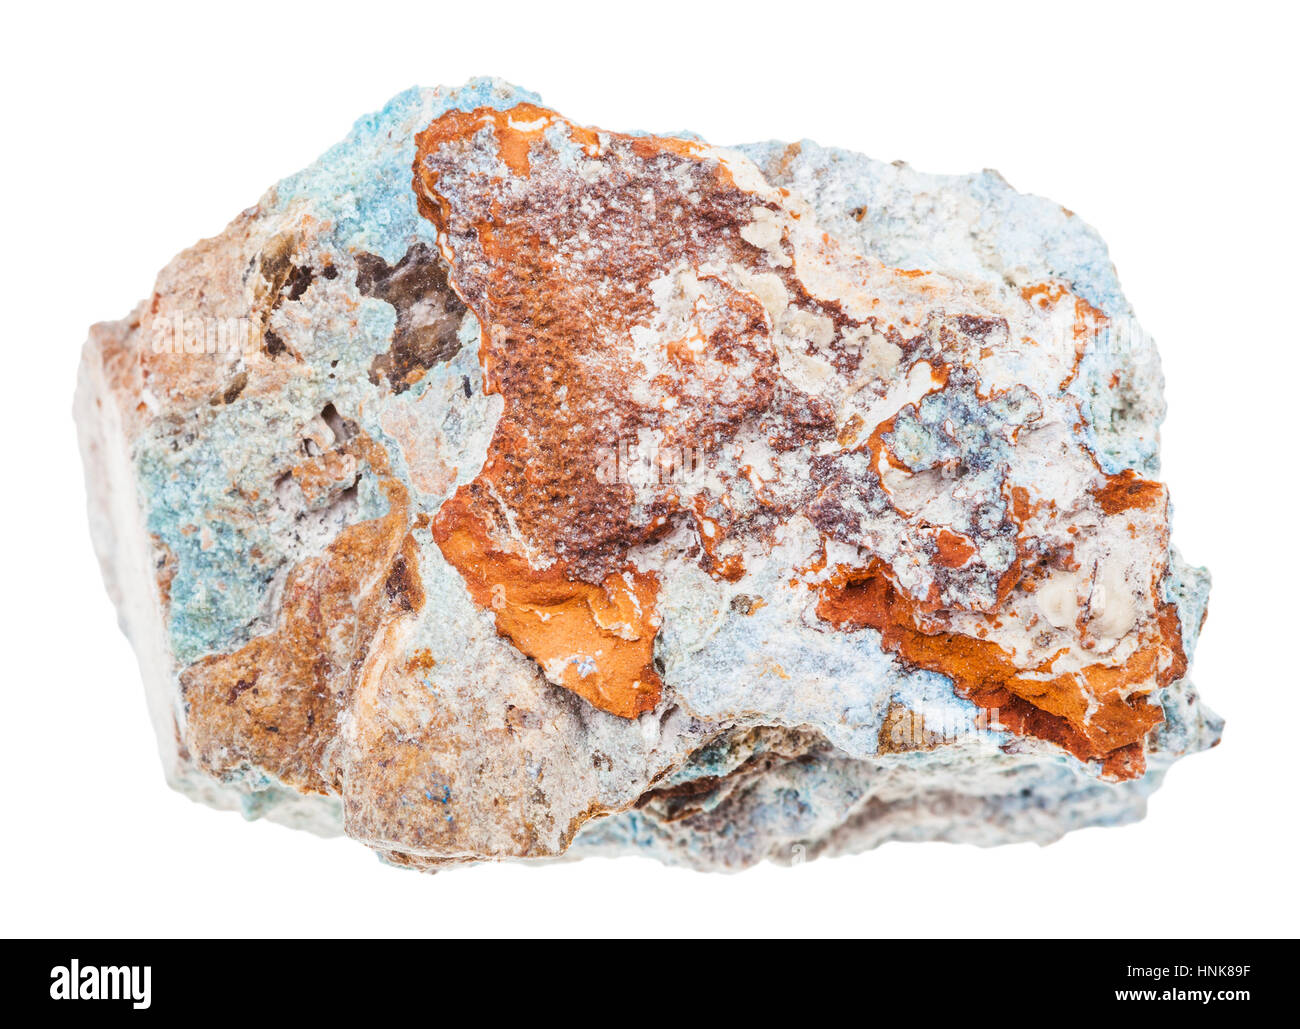 Makro-Aufnahmen der geologischen Sammlung Mineral - Präparat aus Scorodite Stein (Arsen Erz) isoliert auf weißem Hintergrund Stockfoto